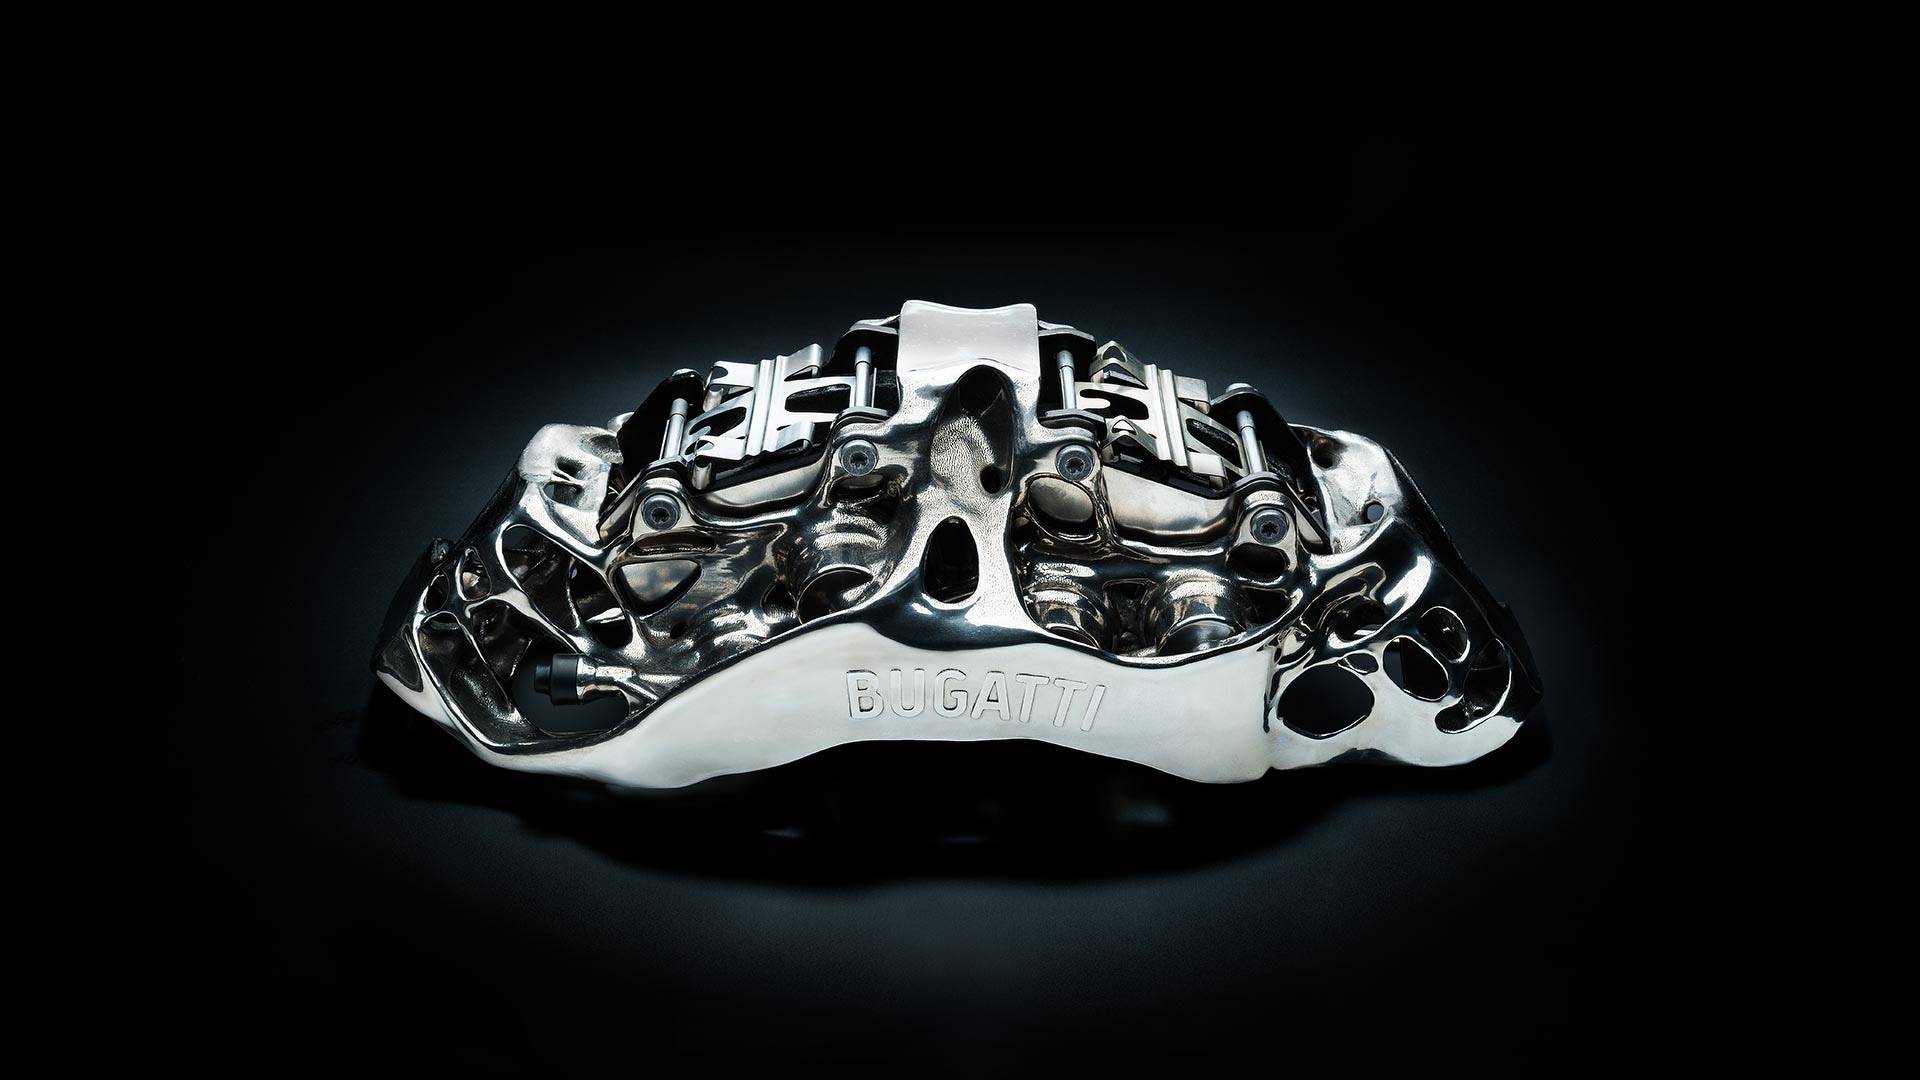 В Bugatti Automobiles успешно испытали напечатанный на 3D принтере тормозной суппорт - 1